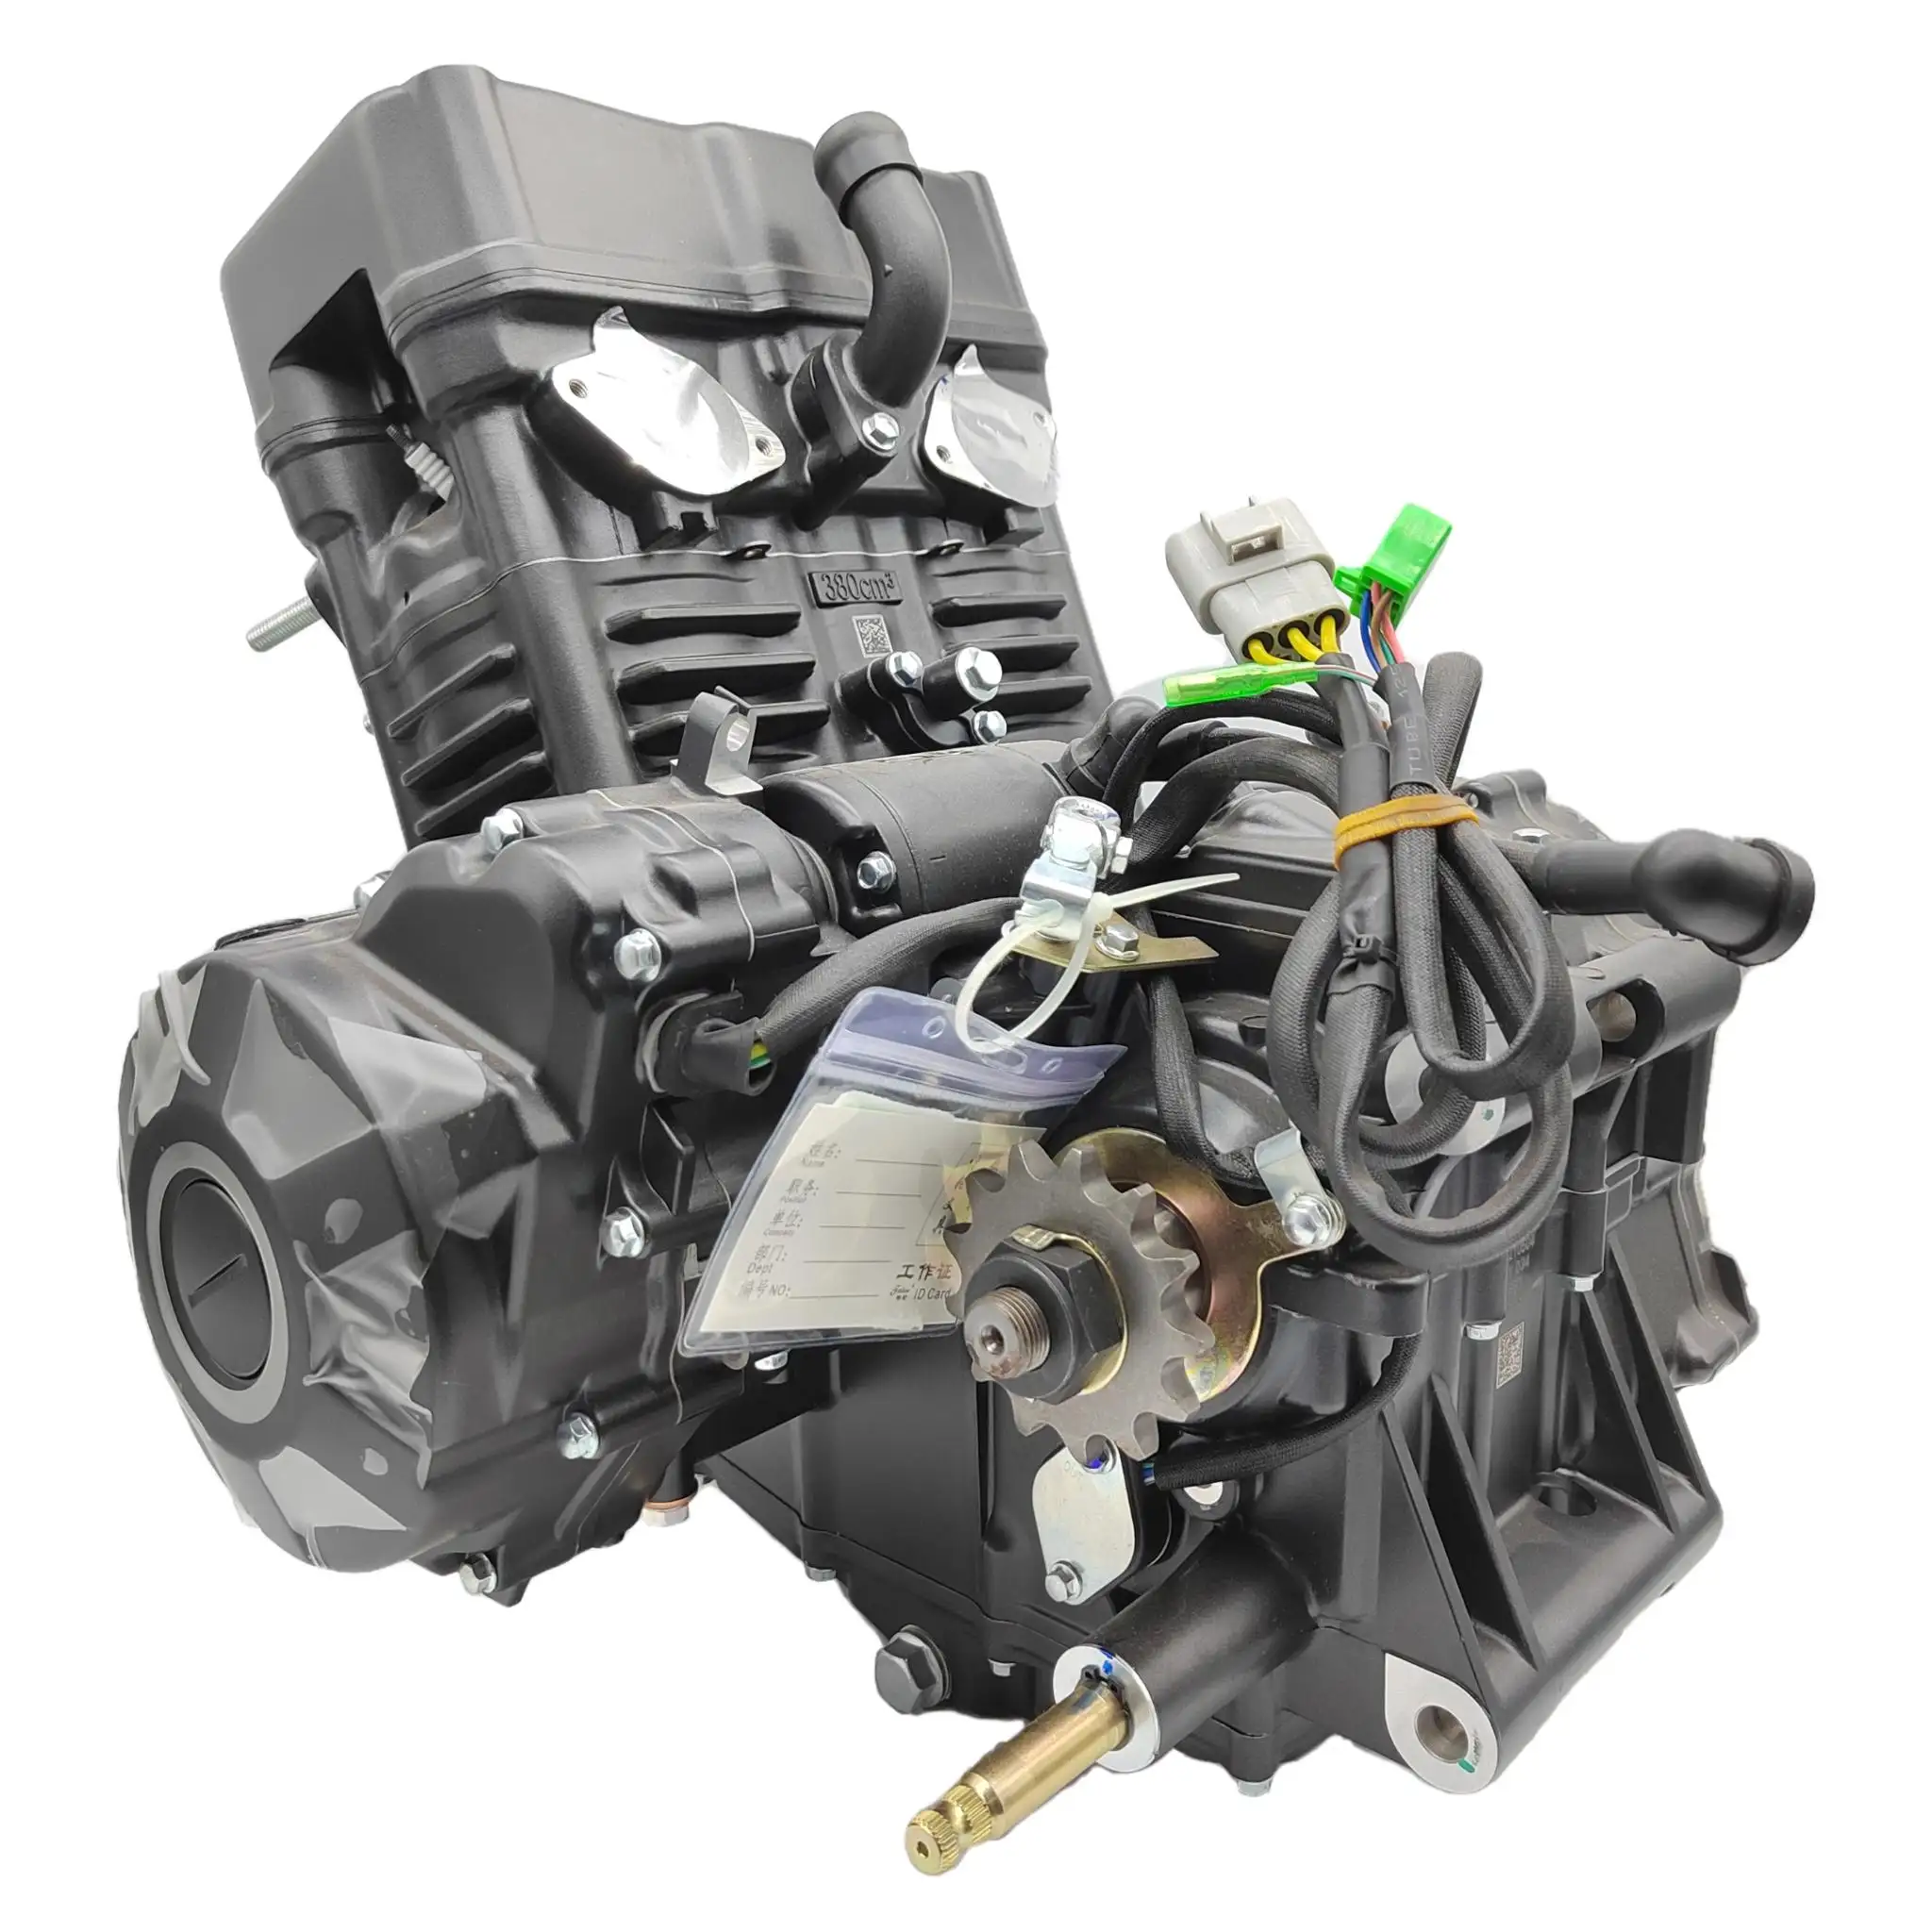 Zongshen-ensemble moteur Tc380cc deux cylindres refroidi à l'eau, moteur 380cc pour Honda